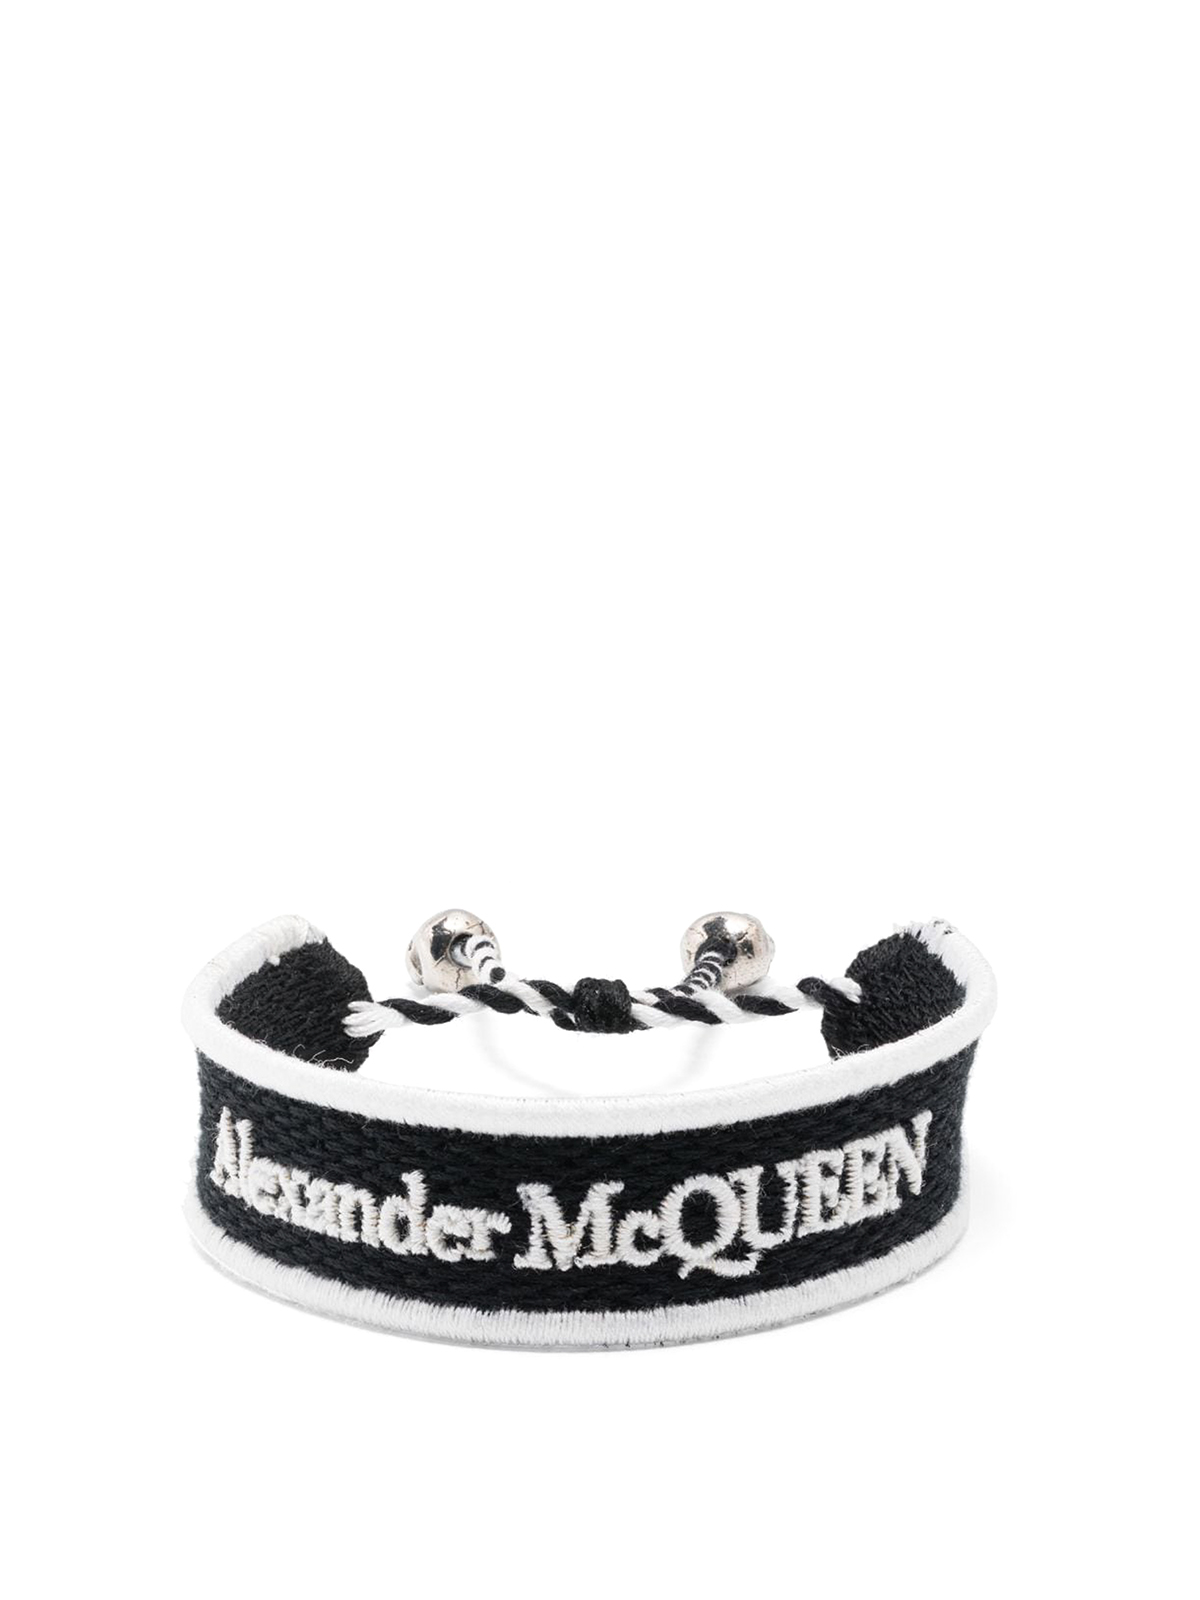 Alexander McQueen Black Bracelet